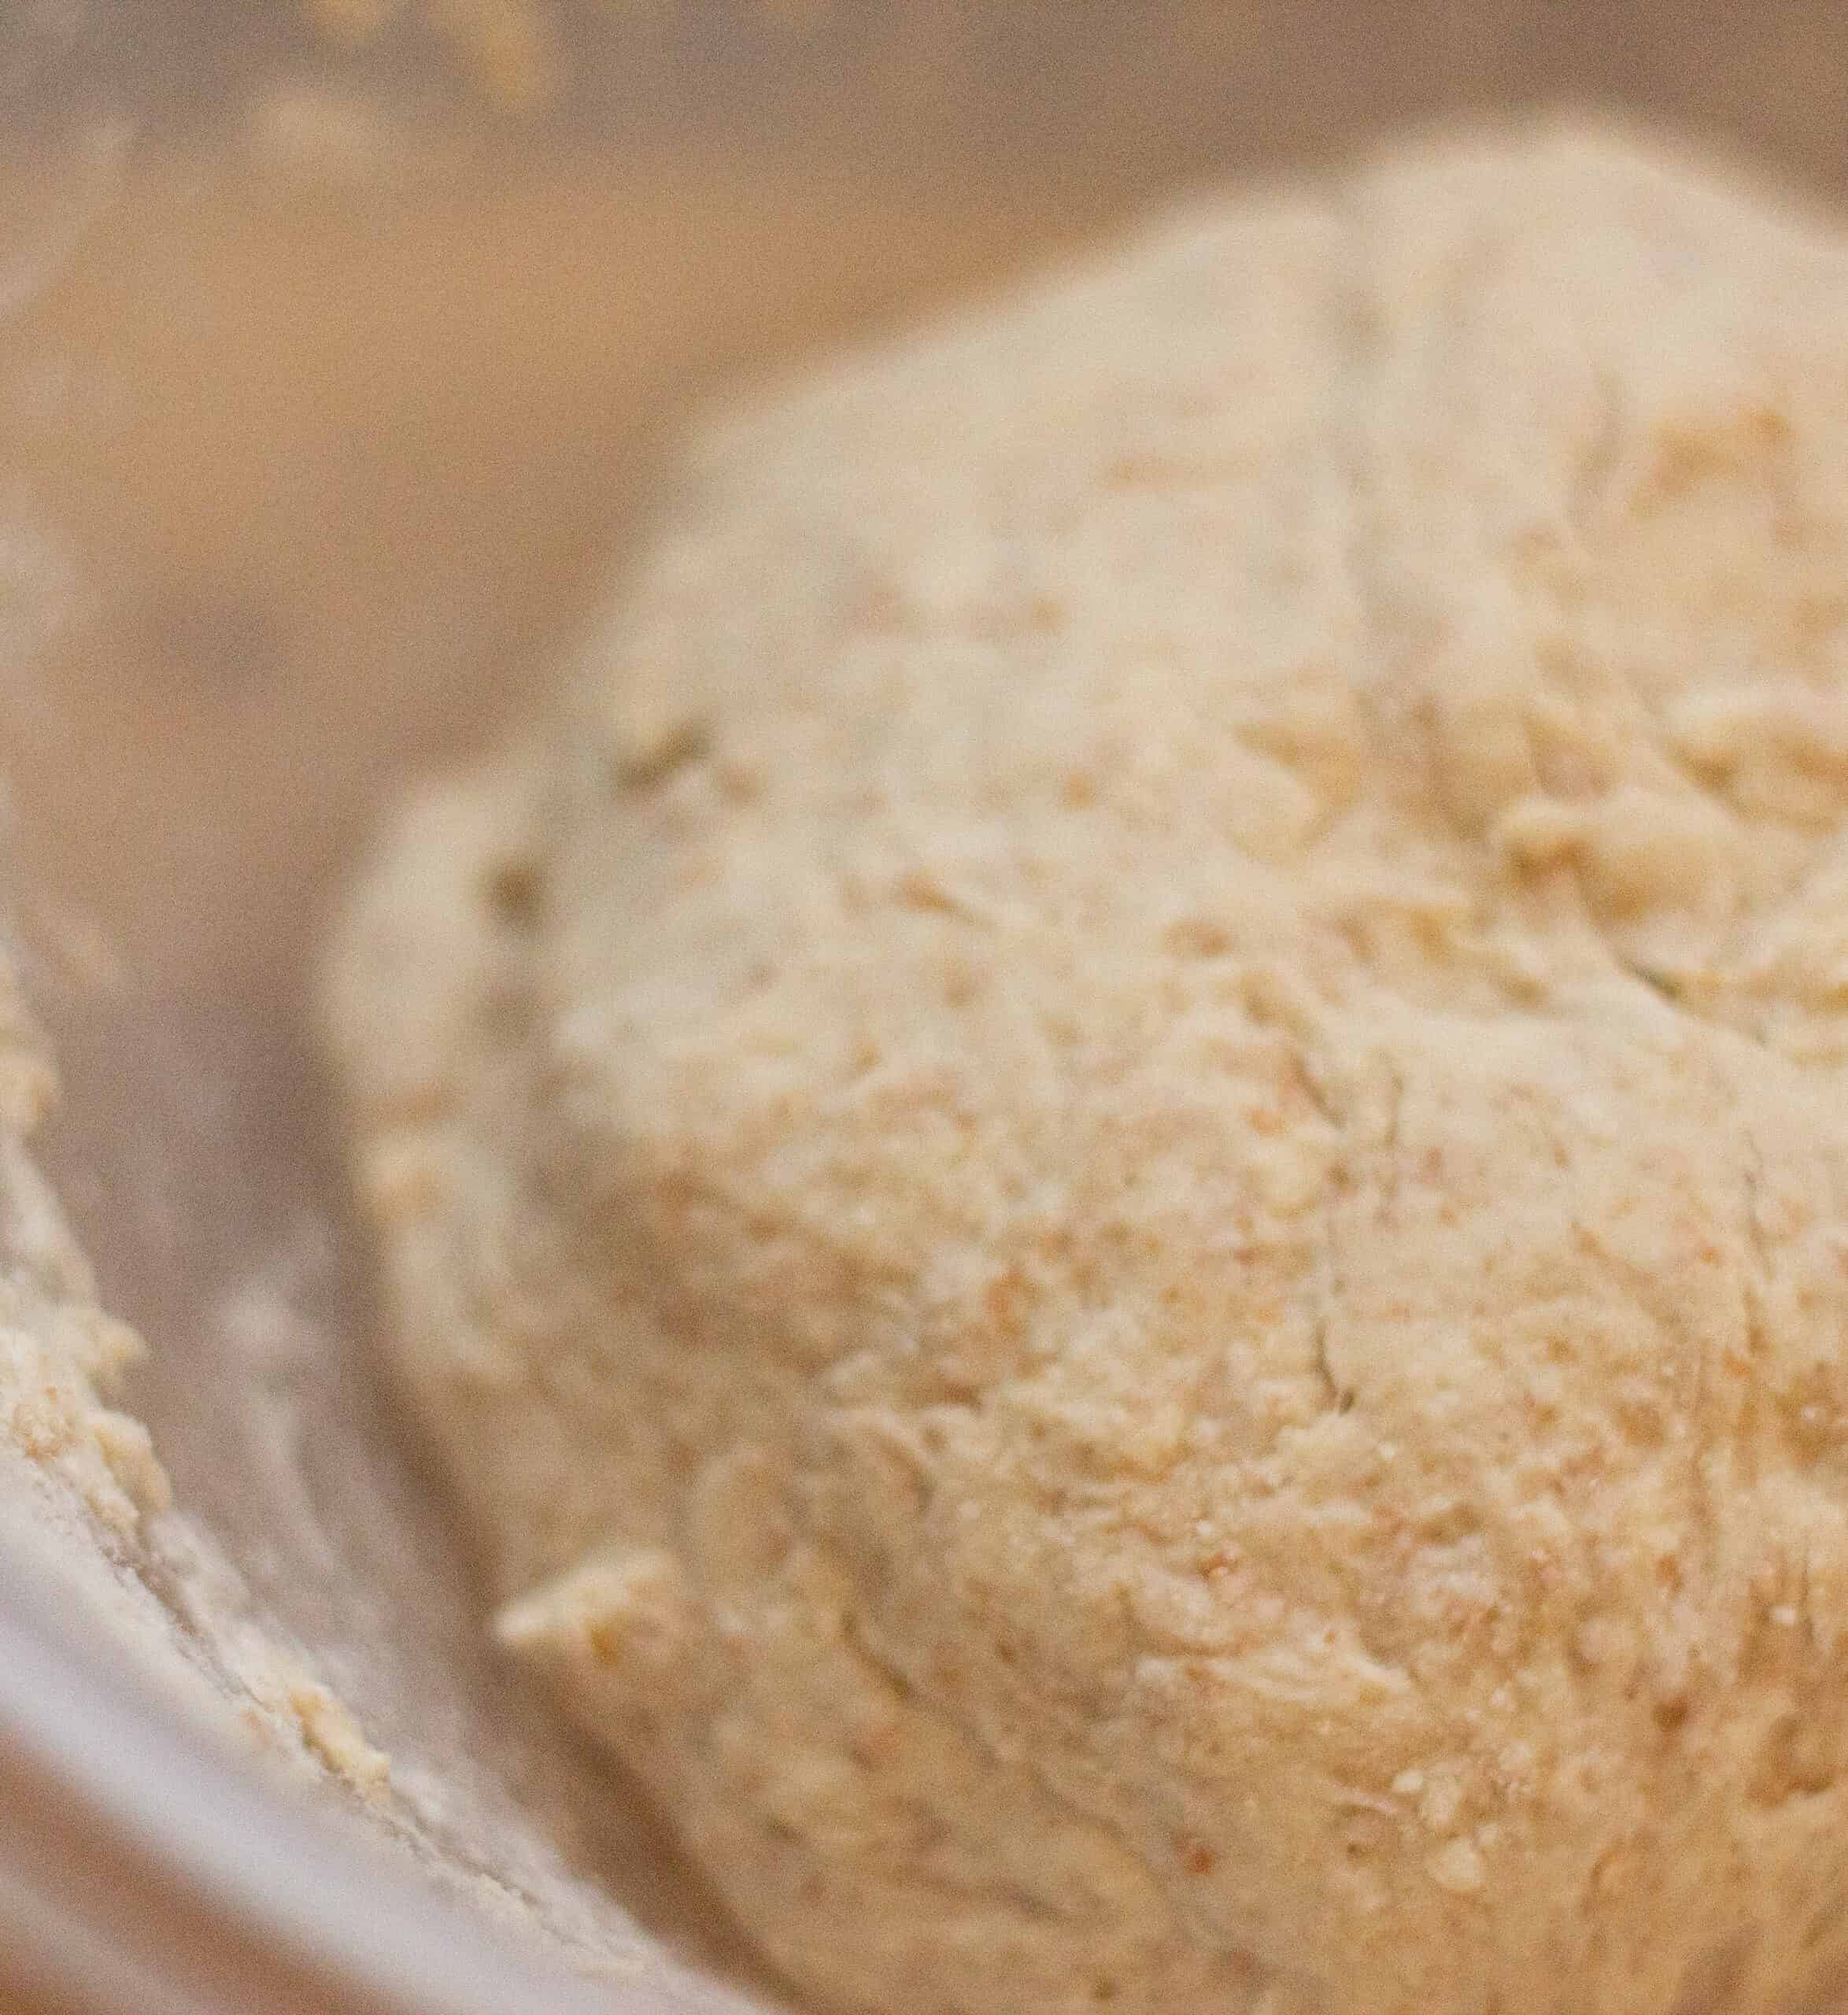 A ball of bread dough